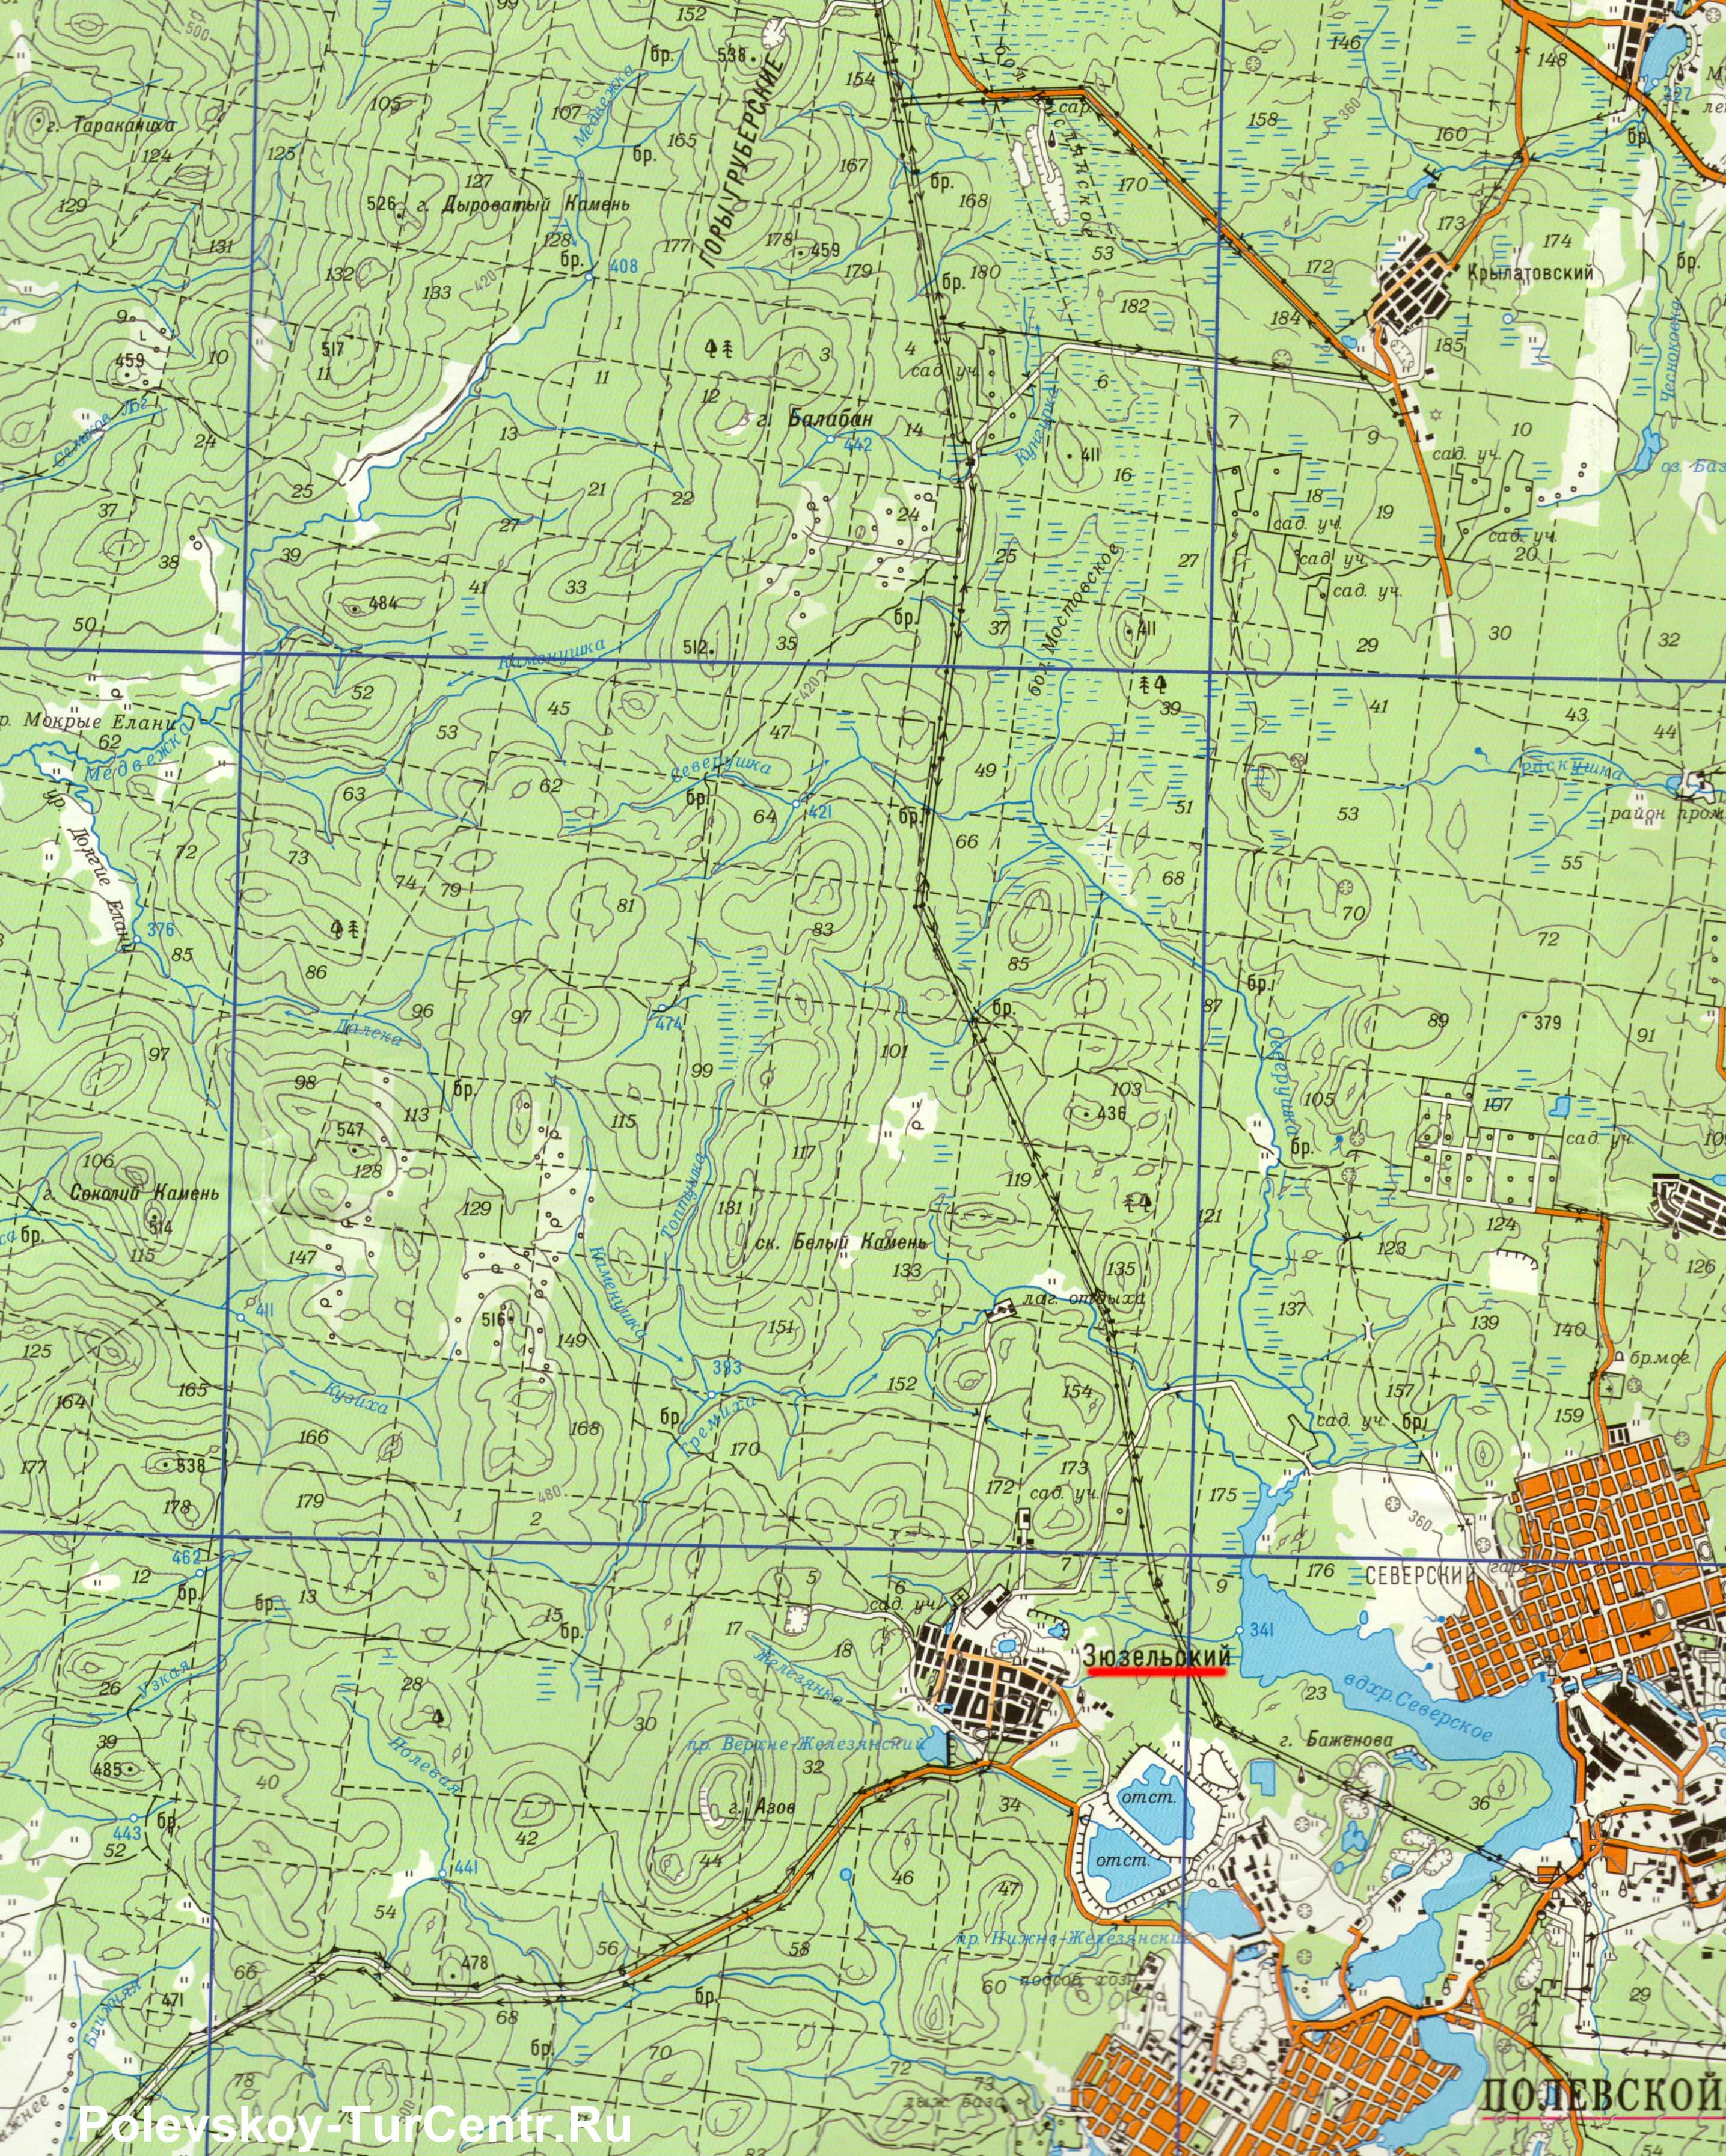 Карта посёлка Зюзельский с окрестностями (2010 г.)